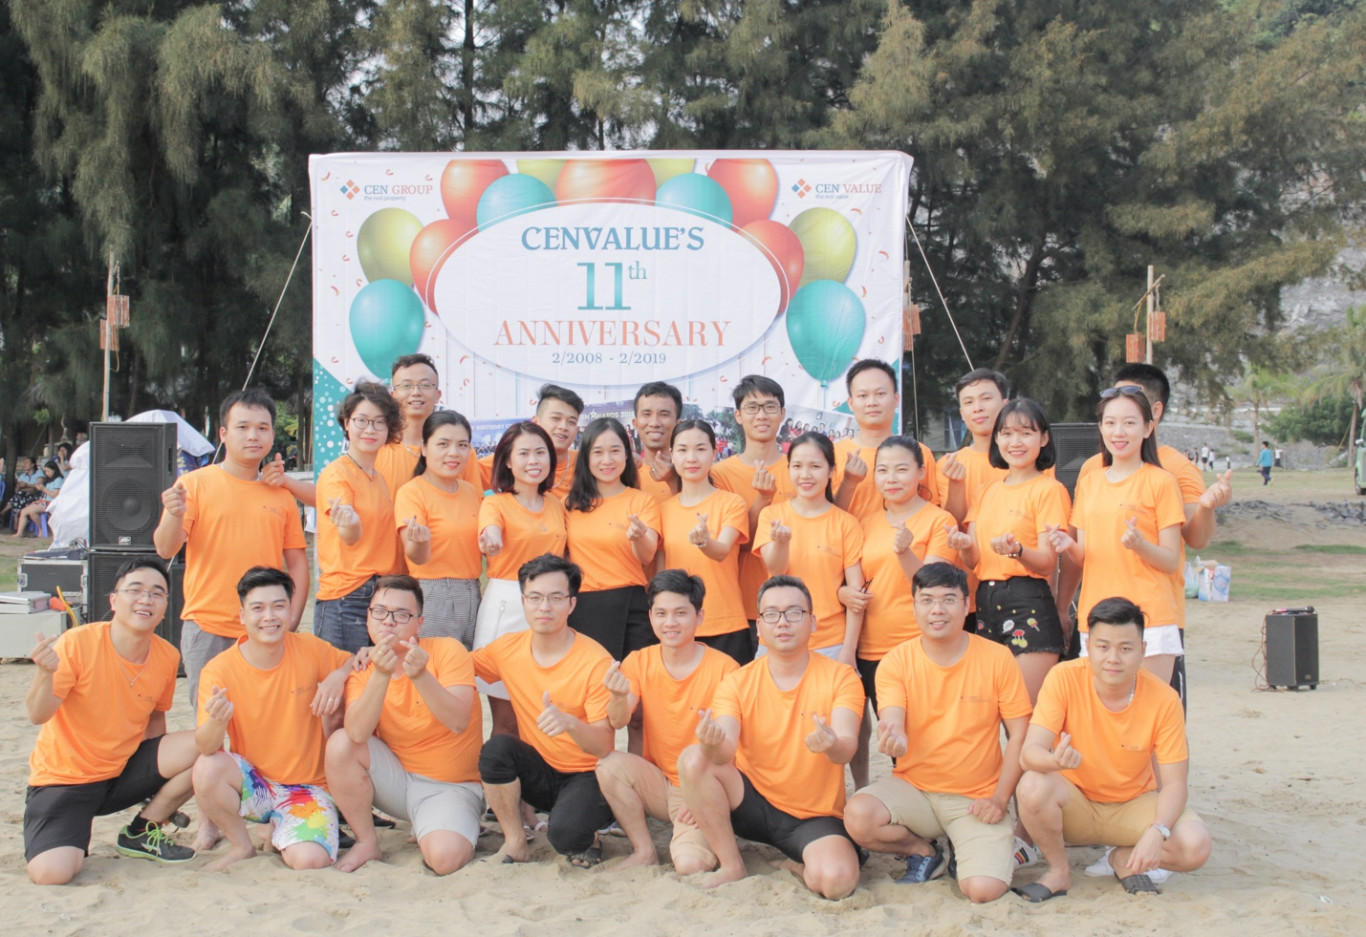 CenValue’s 11 th Anniversary - Hành trình 11 năm của những chiến binh Thẩm định!